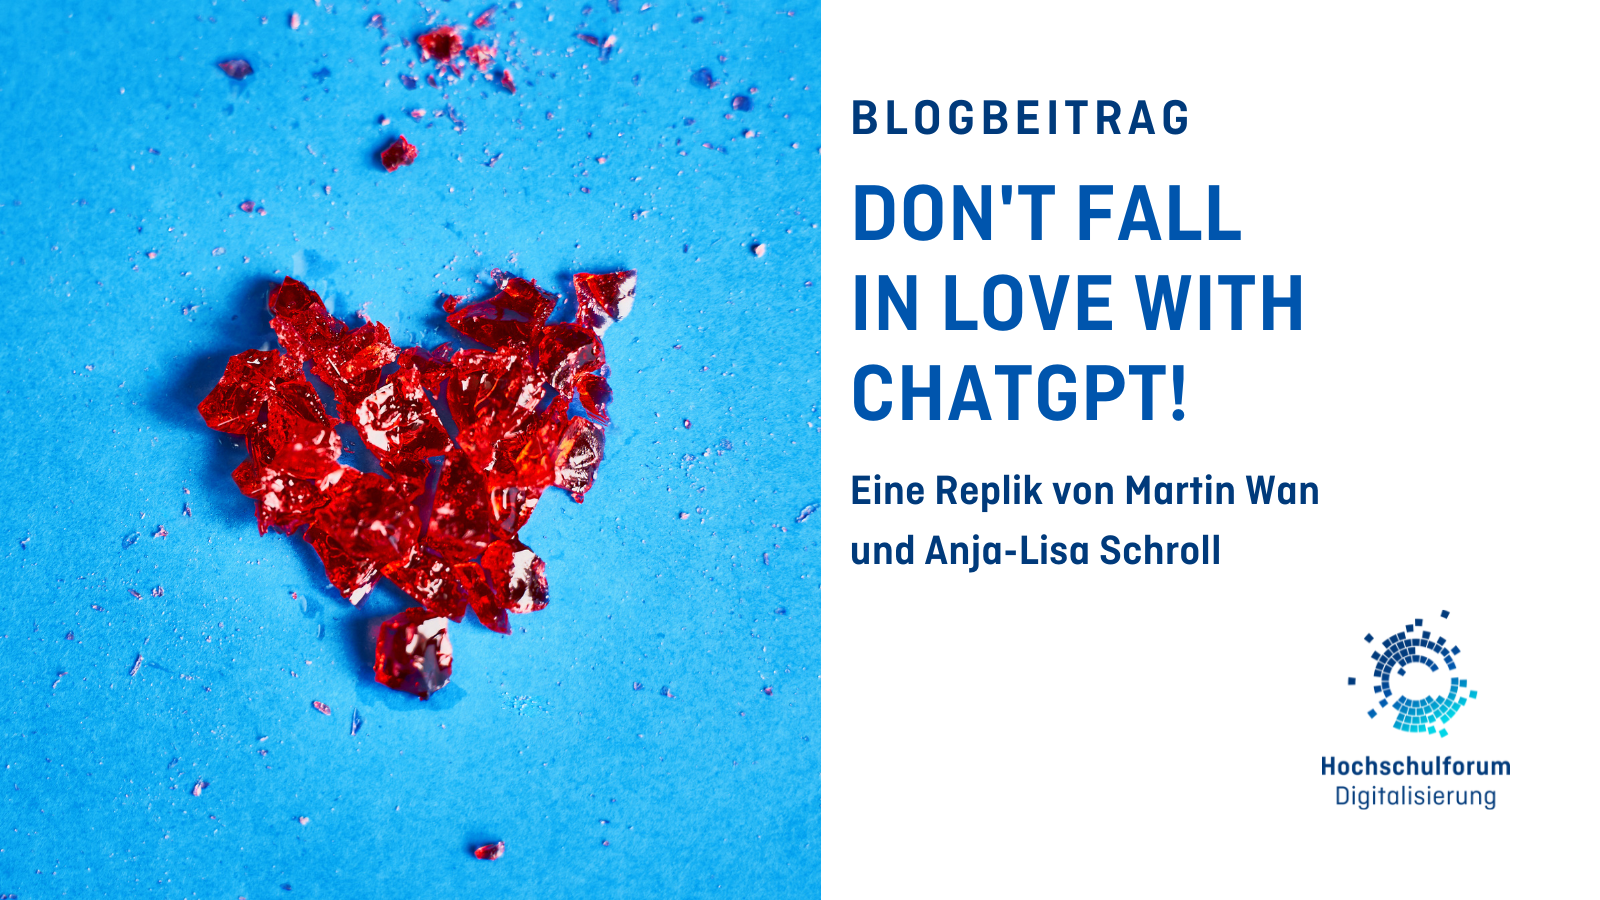 Titelbild des Blogbeitrags: „Don’t Fall in Love With ChatGPT!“. Untertitel: „Eine Replik von Martin Wan und Anja-Lisa Schroll“. Bild rechts zeigt ein zerbrochenes rotes Herz auf blauem Hintergrund. Logo rechts unten: Hochschulforum Digitalisierung.